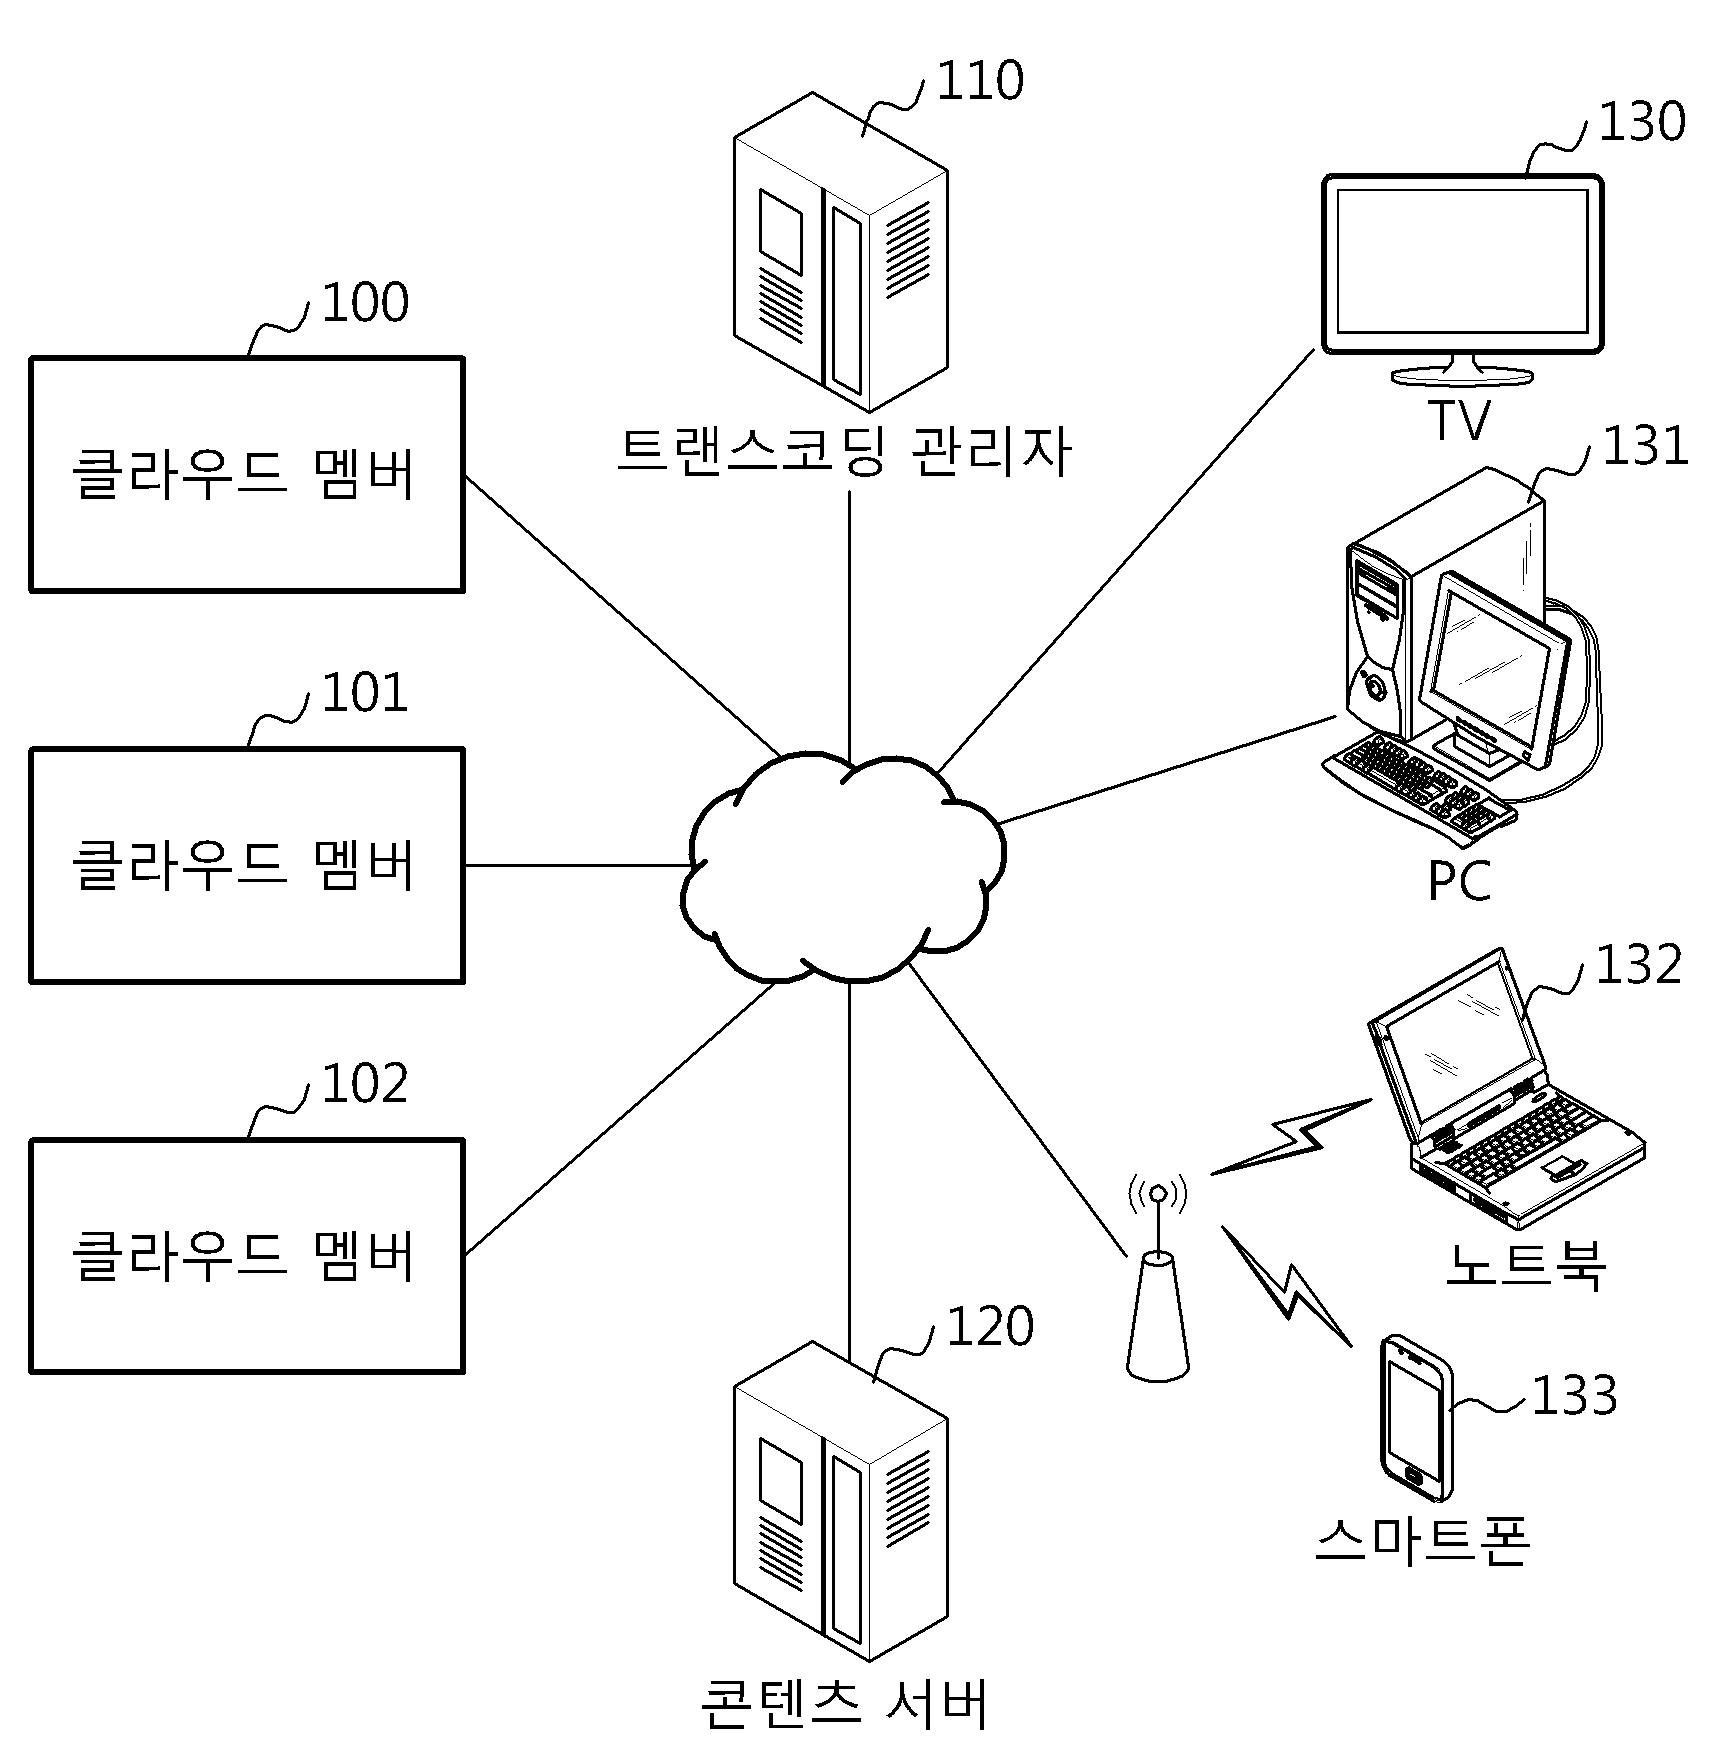 이더넷에 기반을 둔 패킷 전달 계층 방식의 수동형 광 네트워크를 제공하는 커넥션 관리 서버, ＯＬＴ, ＯＮＵ/ＯＮＴ 및 그 제공 방법과 시스템